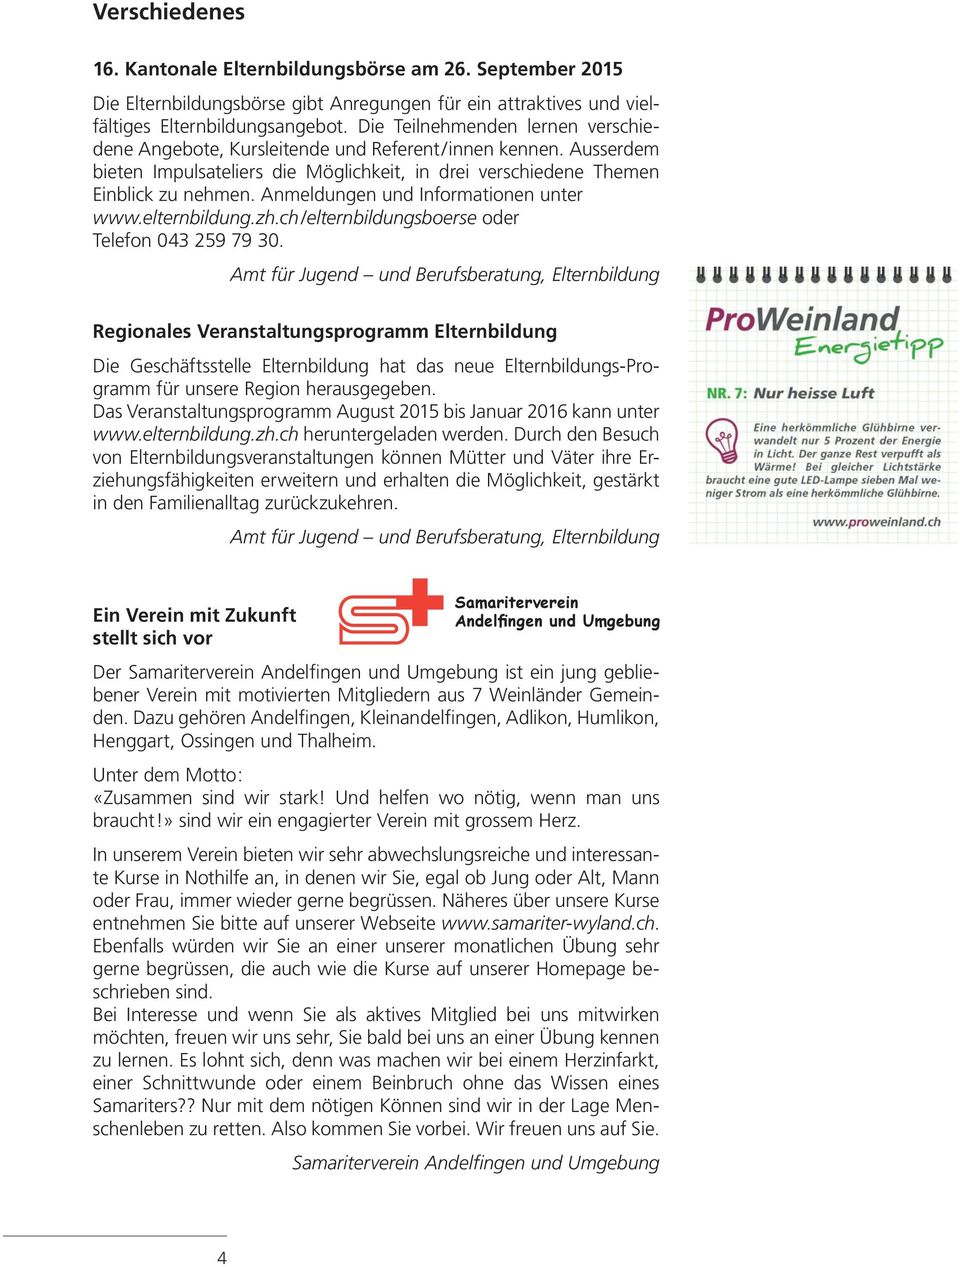 Anmeldungen und Informationen unter www.elternbildung.zh.ch/elternbildungsboerse oder Telefon 043 259 79 30.